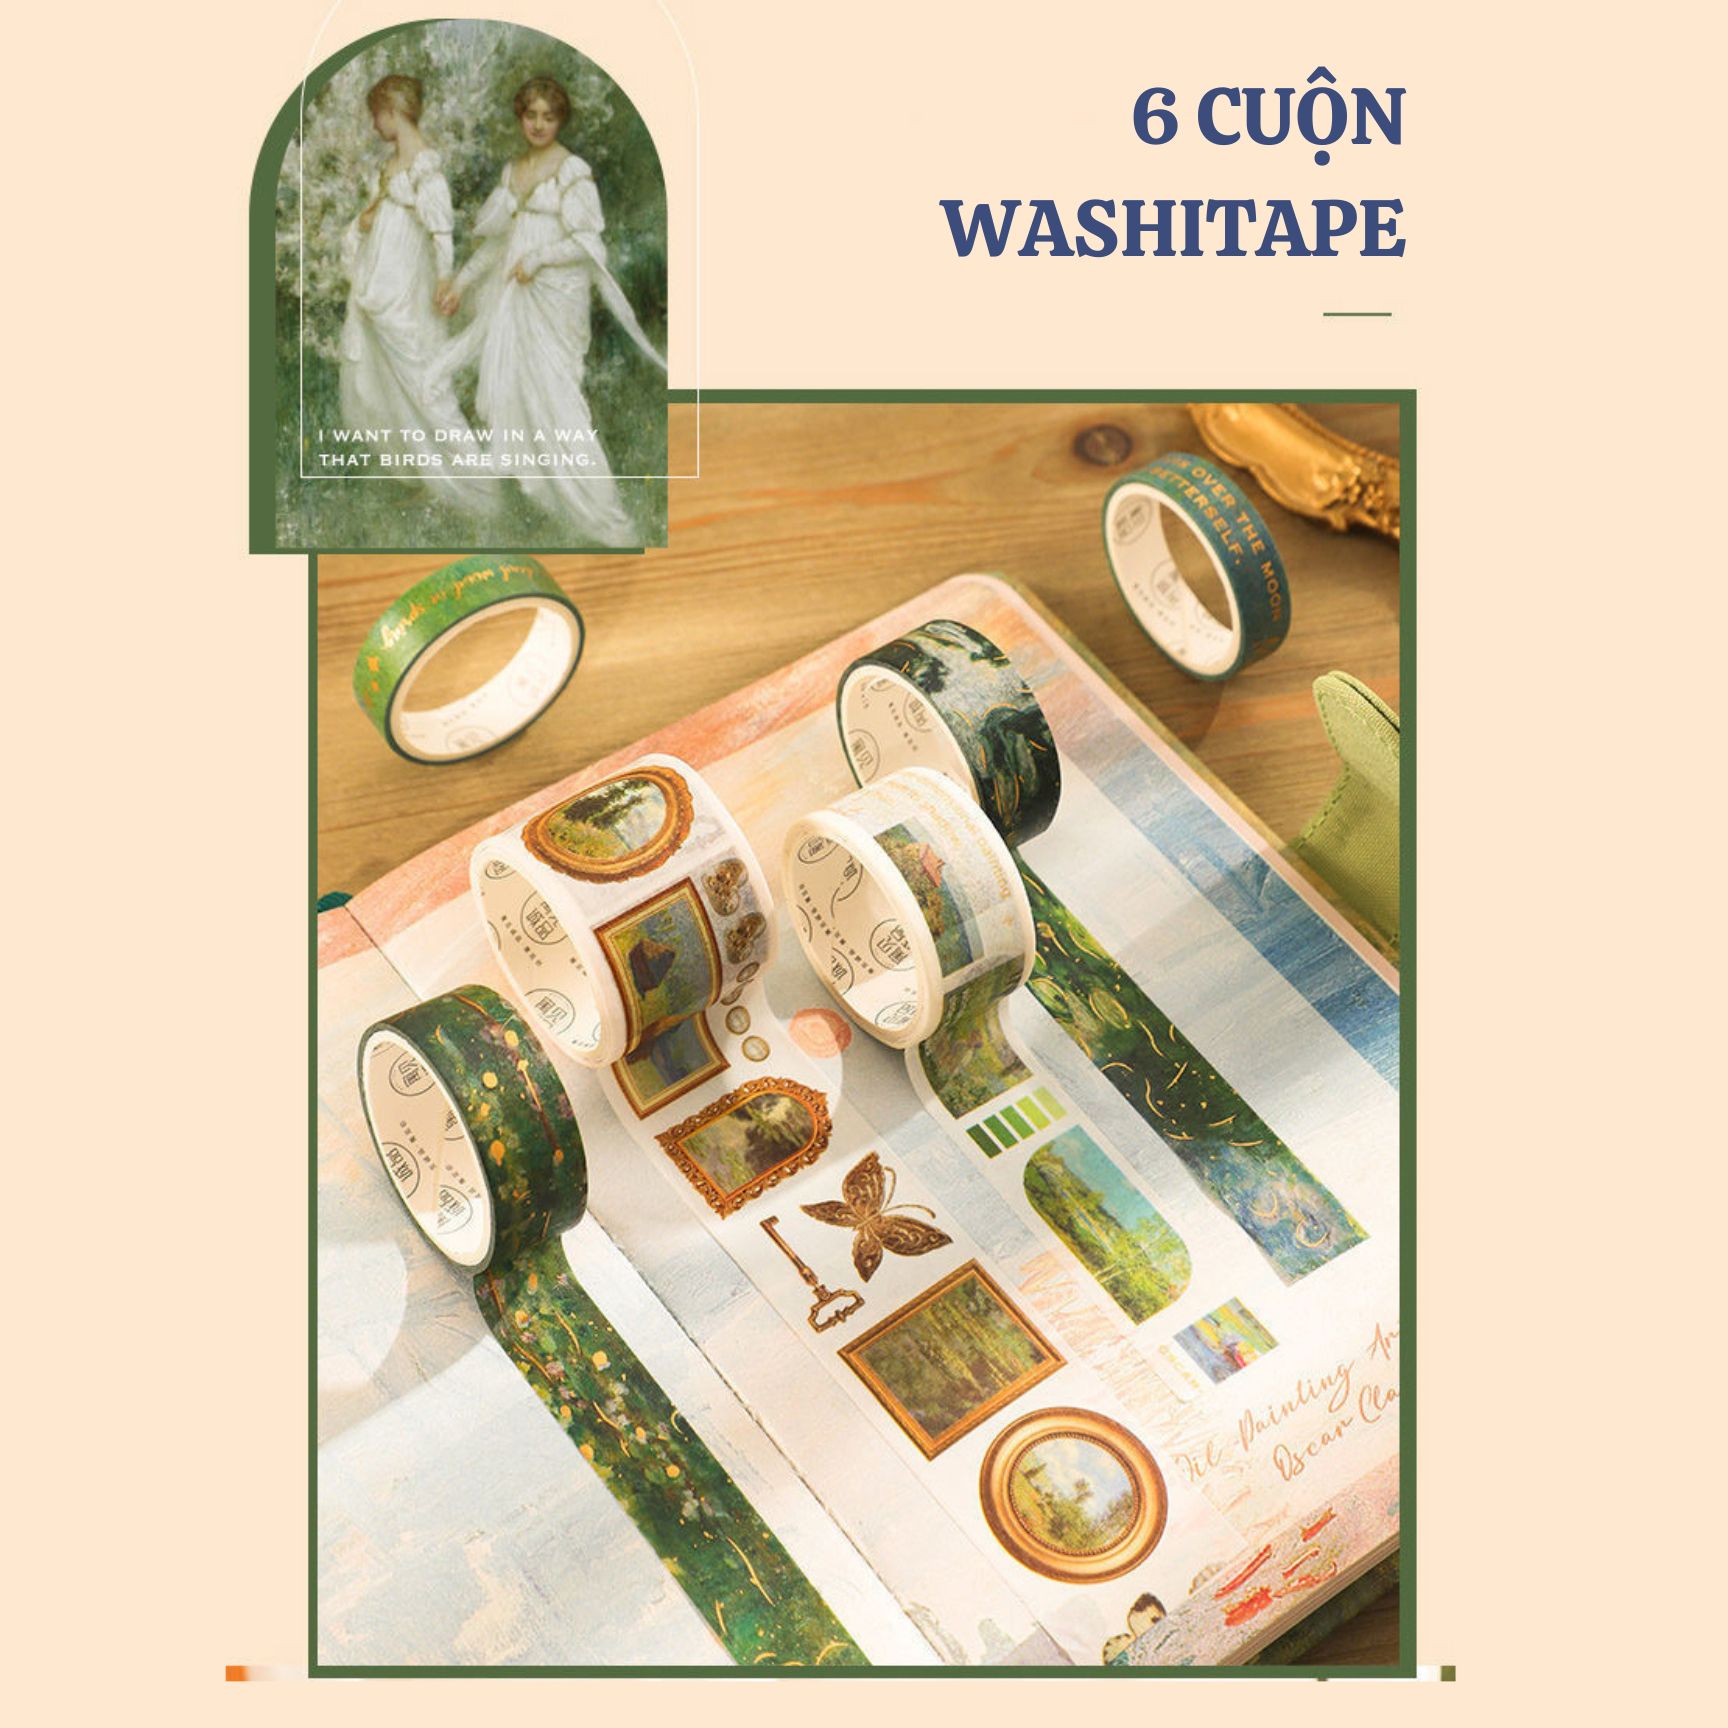 sổ tay bìa cứng - bộ quà tặng phong cách cổ điển, vintage chủ đề hội họa châu âu - claude monet - vincent van gogh